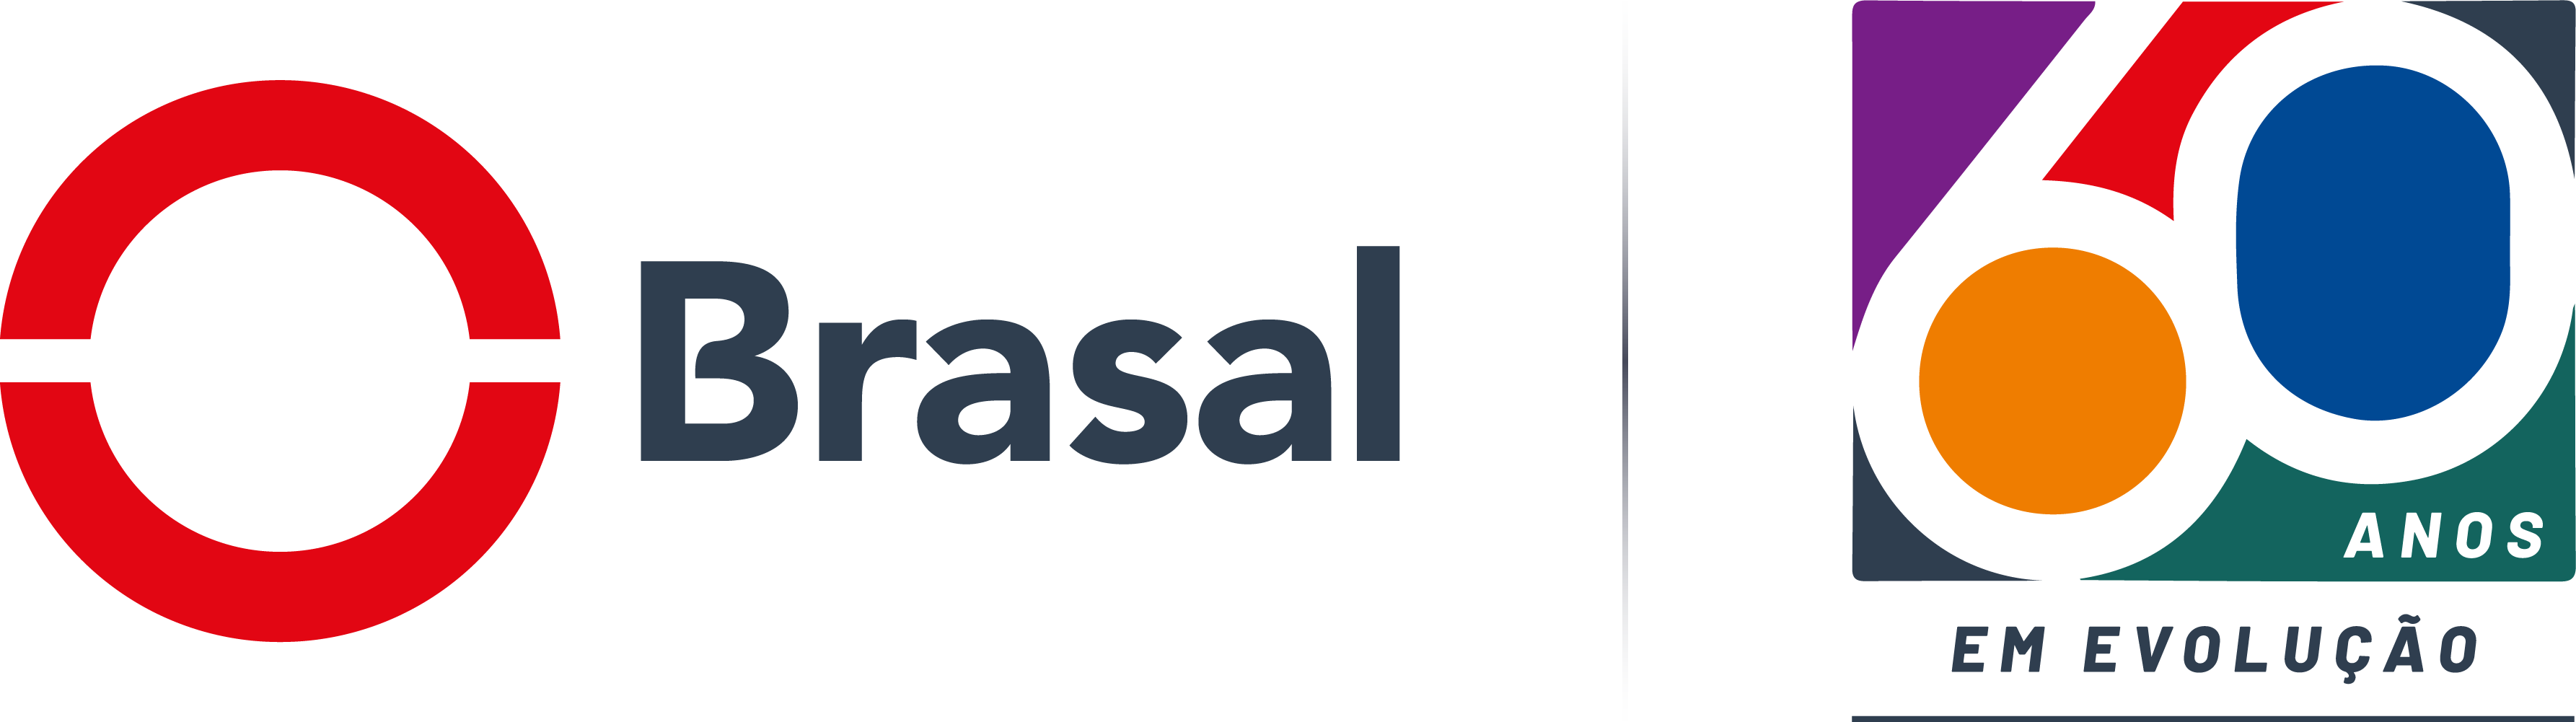 Logo da Brasal